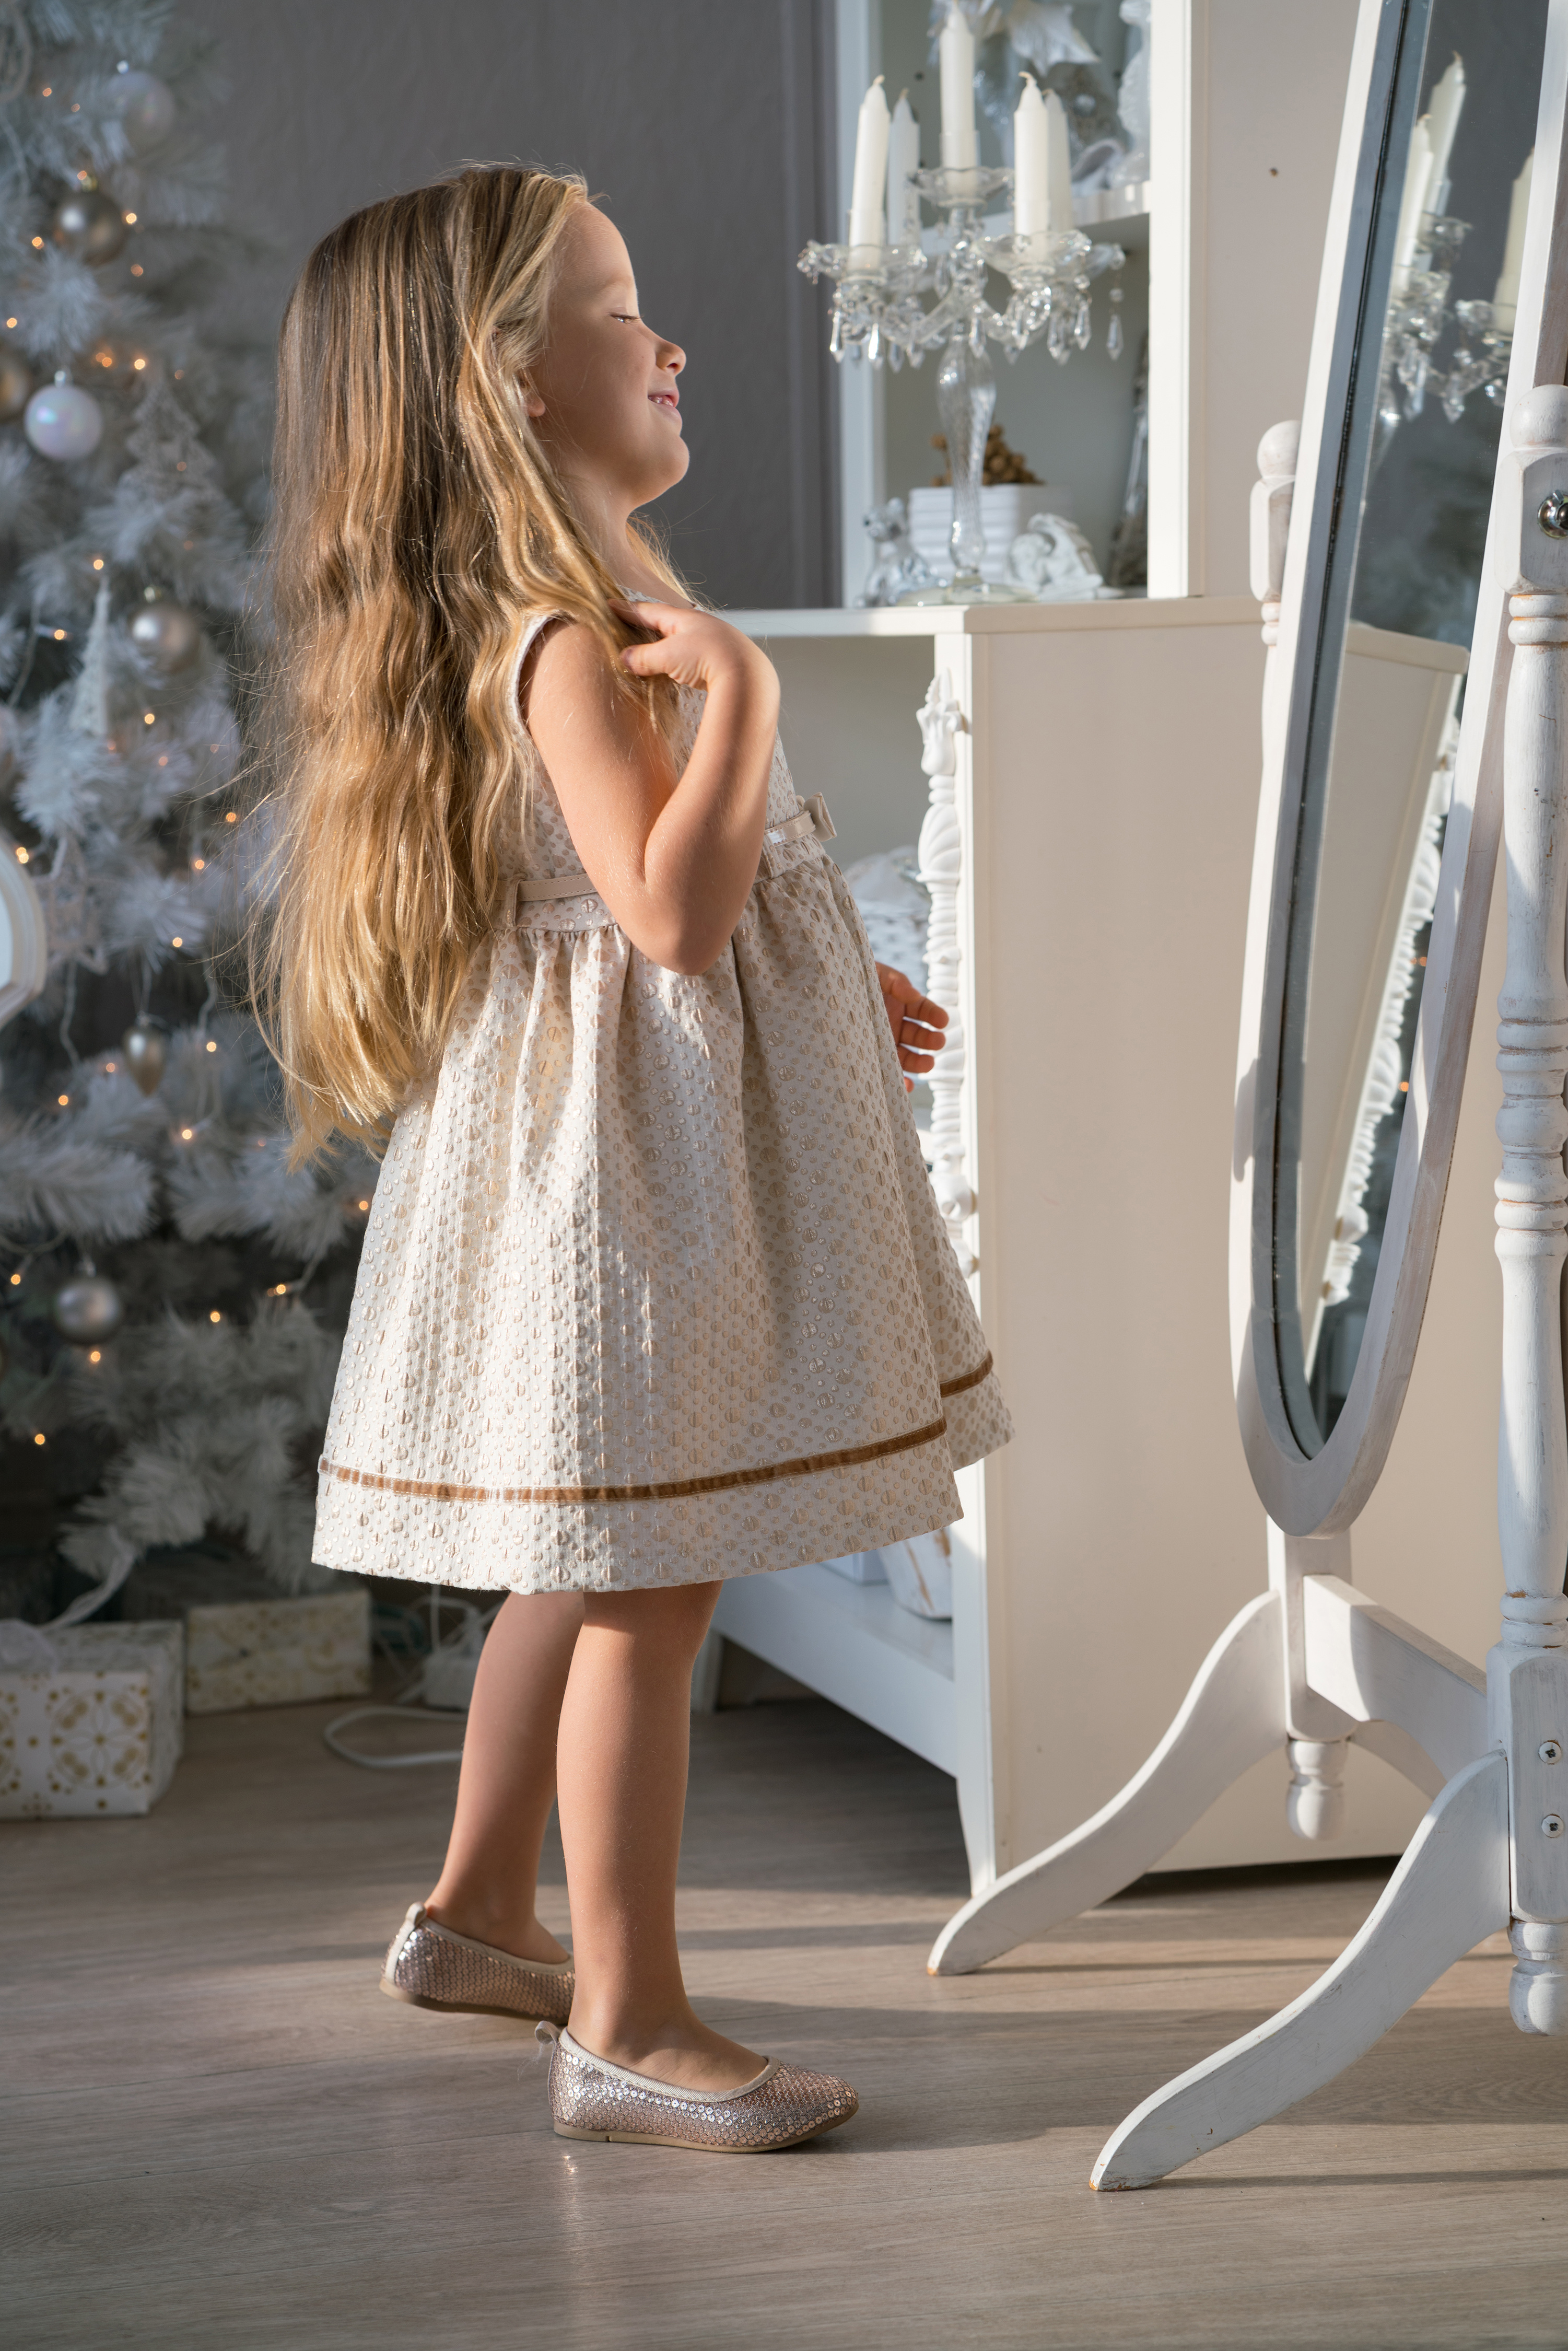 Photo Little girls New year Children Hair Mirror Dress 3002x4500